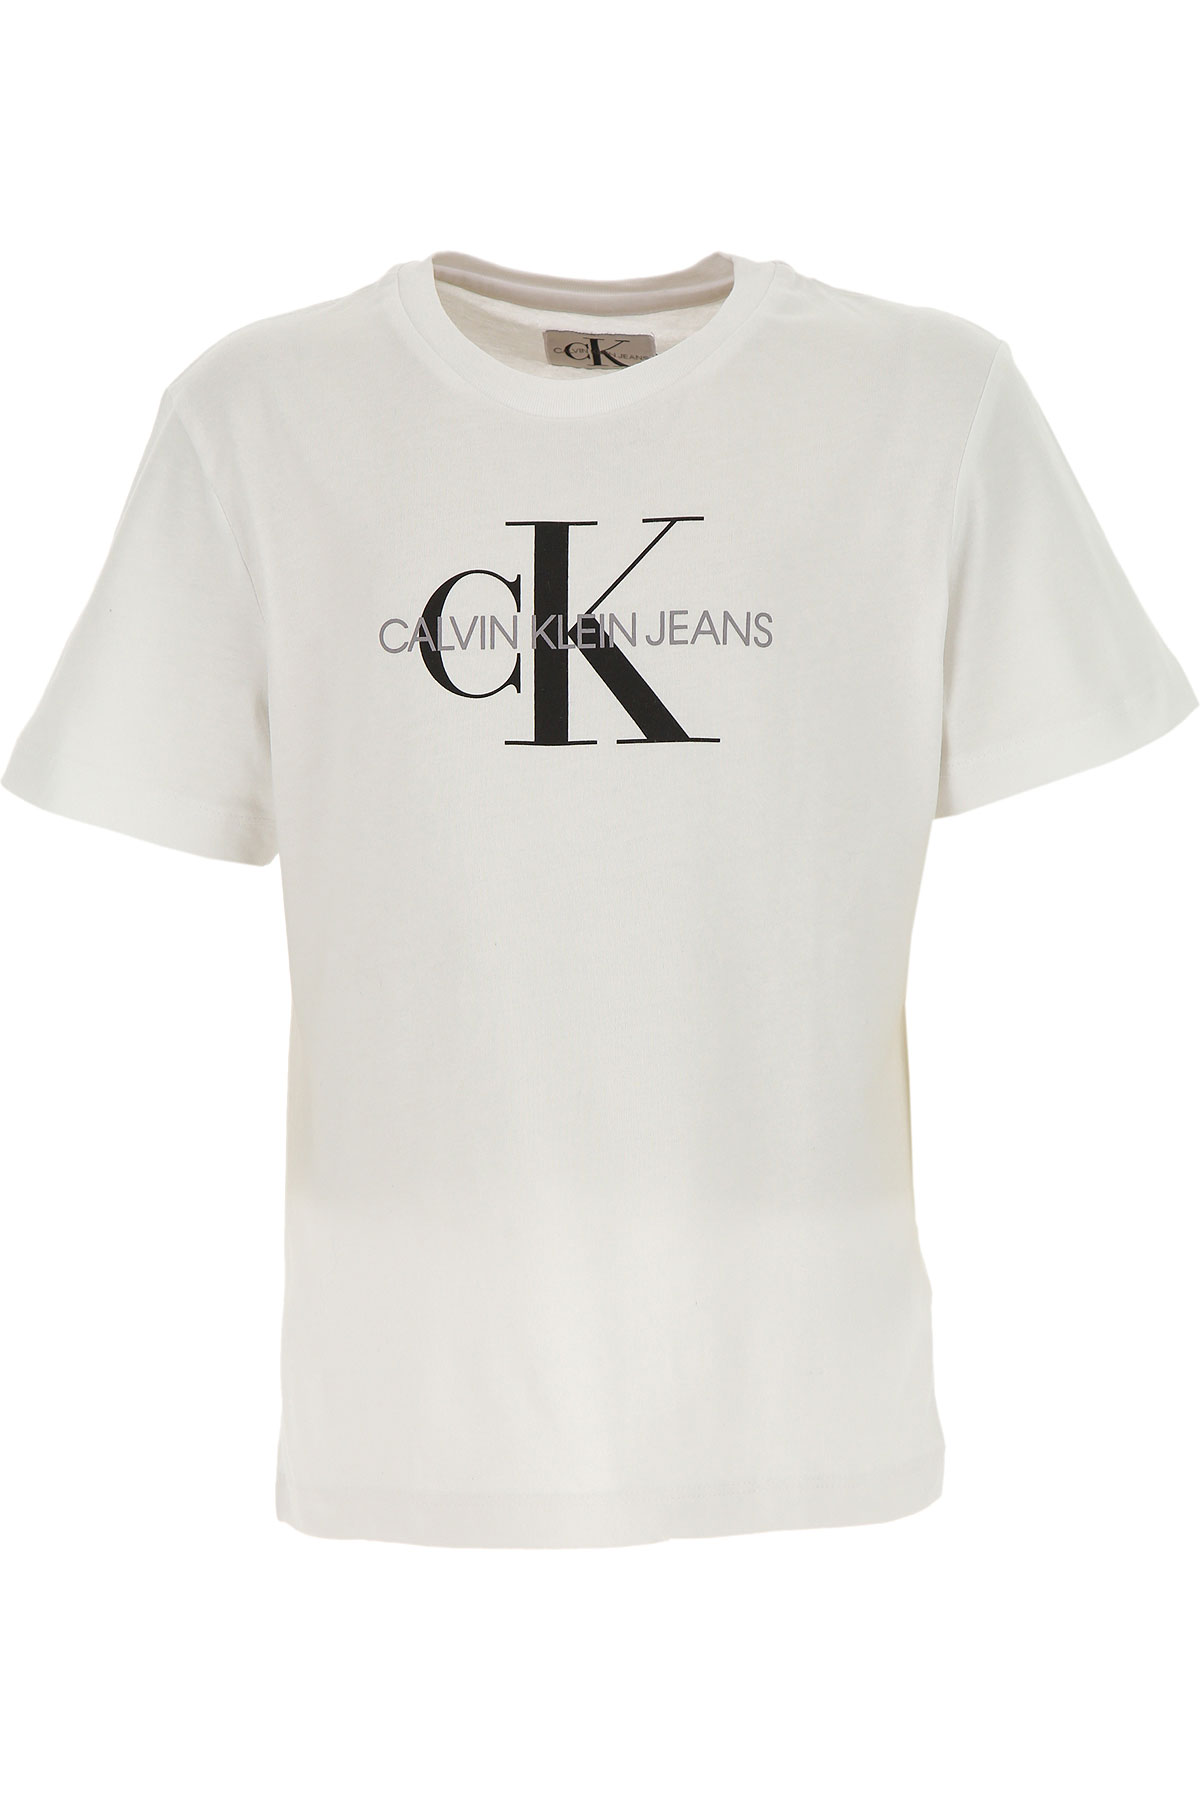 Calvin Klein Kinder T-Shirt für Jungen Günstig im Sale, Weiss, Baumwolle, 2017, 10Y 12Y 14Y 4Y